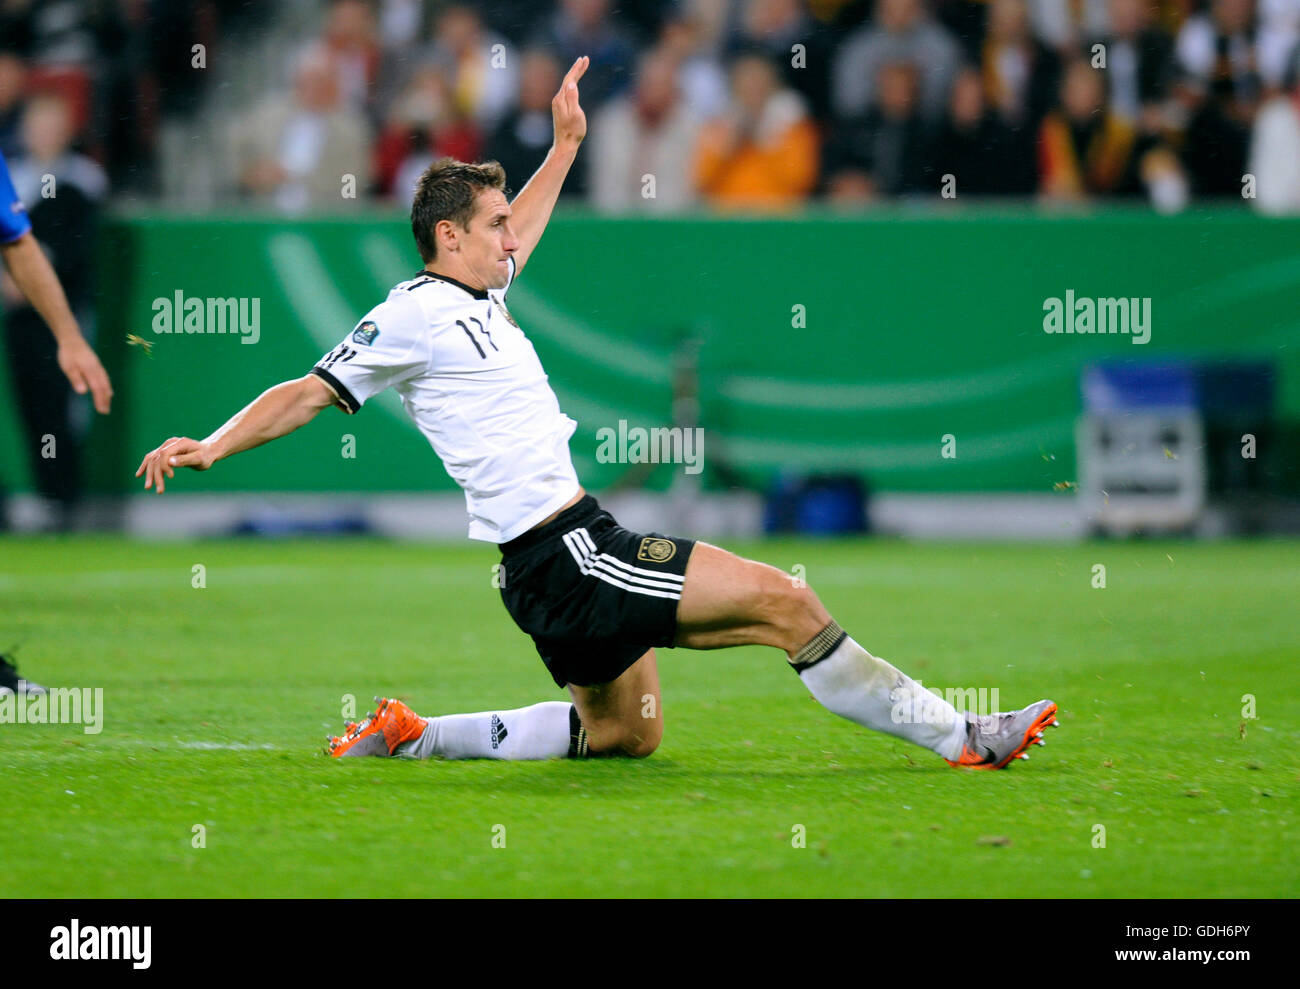 Miroslav Klose, qualificatif pour le championnat d'Europe de football de l'UEFA 2012, l'Allemagne - Azerbaïdjan 6:1 Banque D'Images